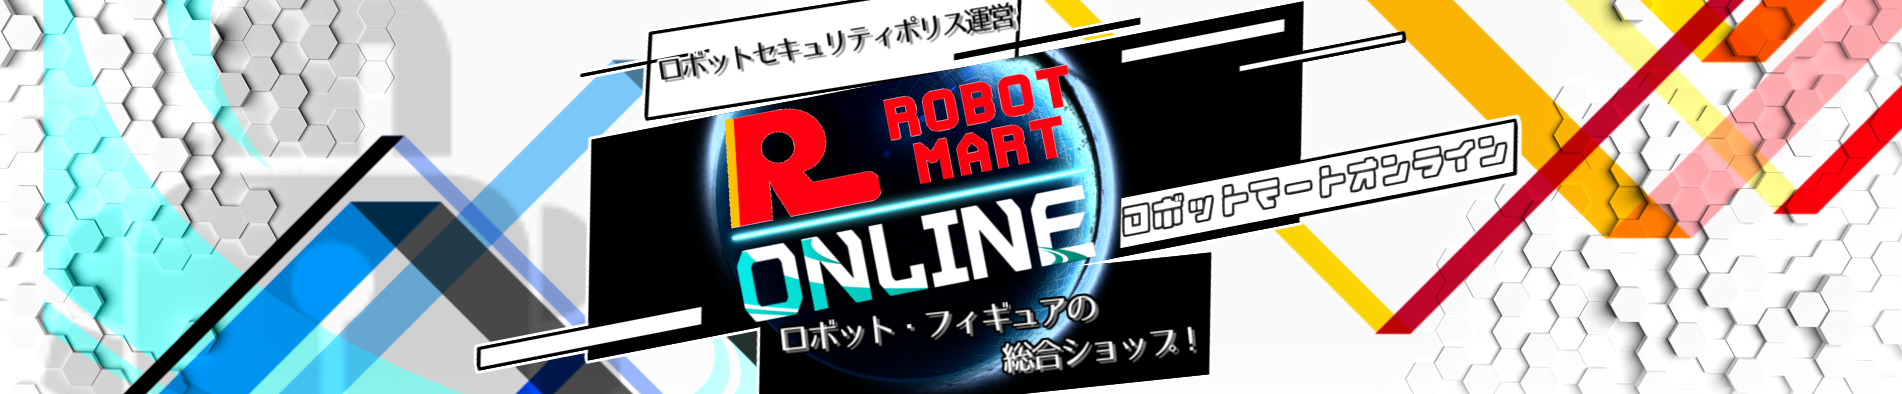 ロボットマートオンライン